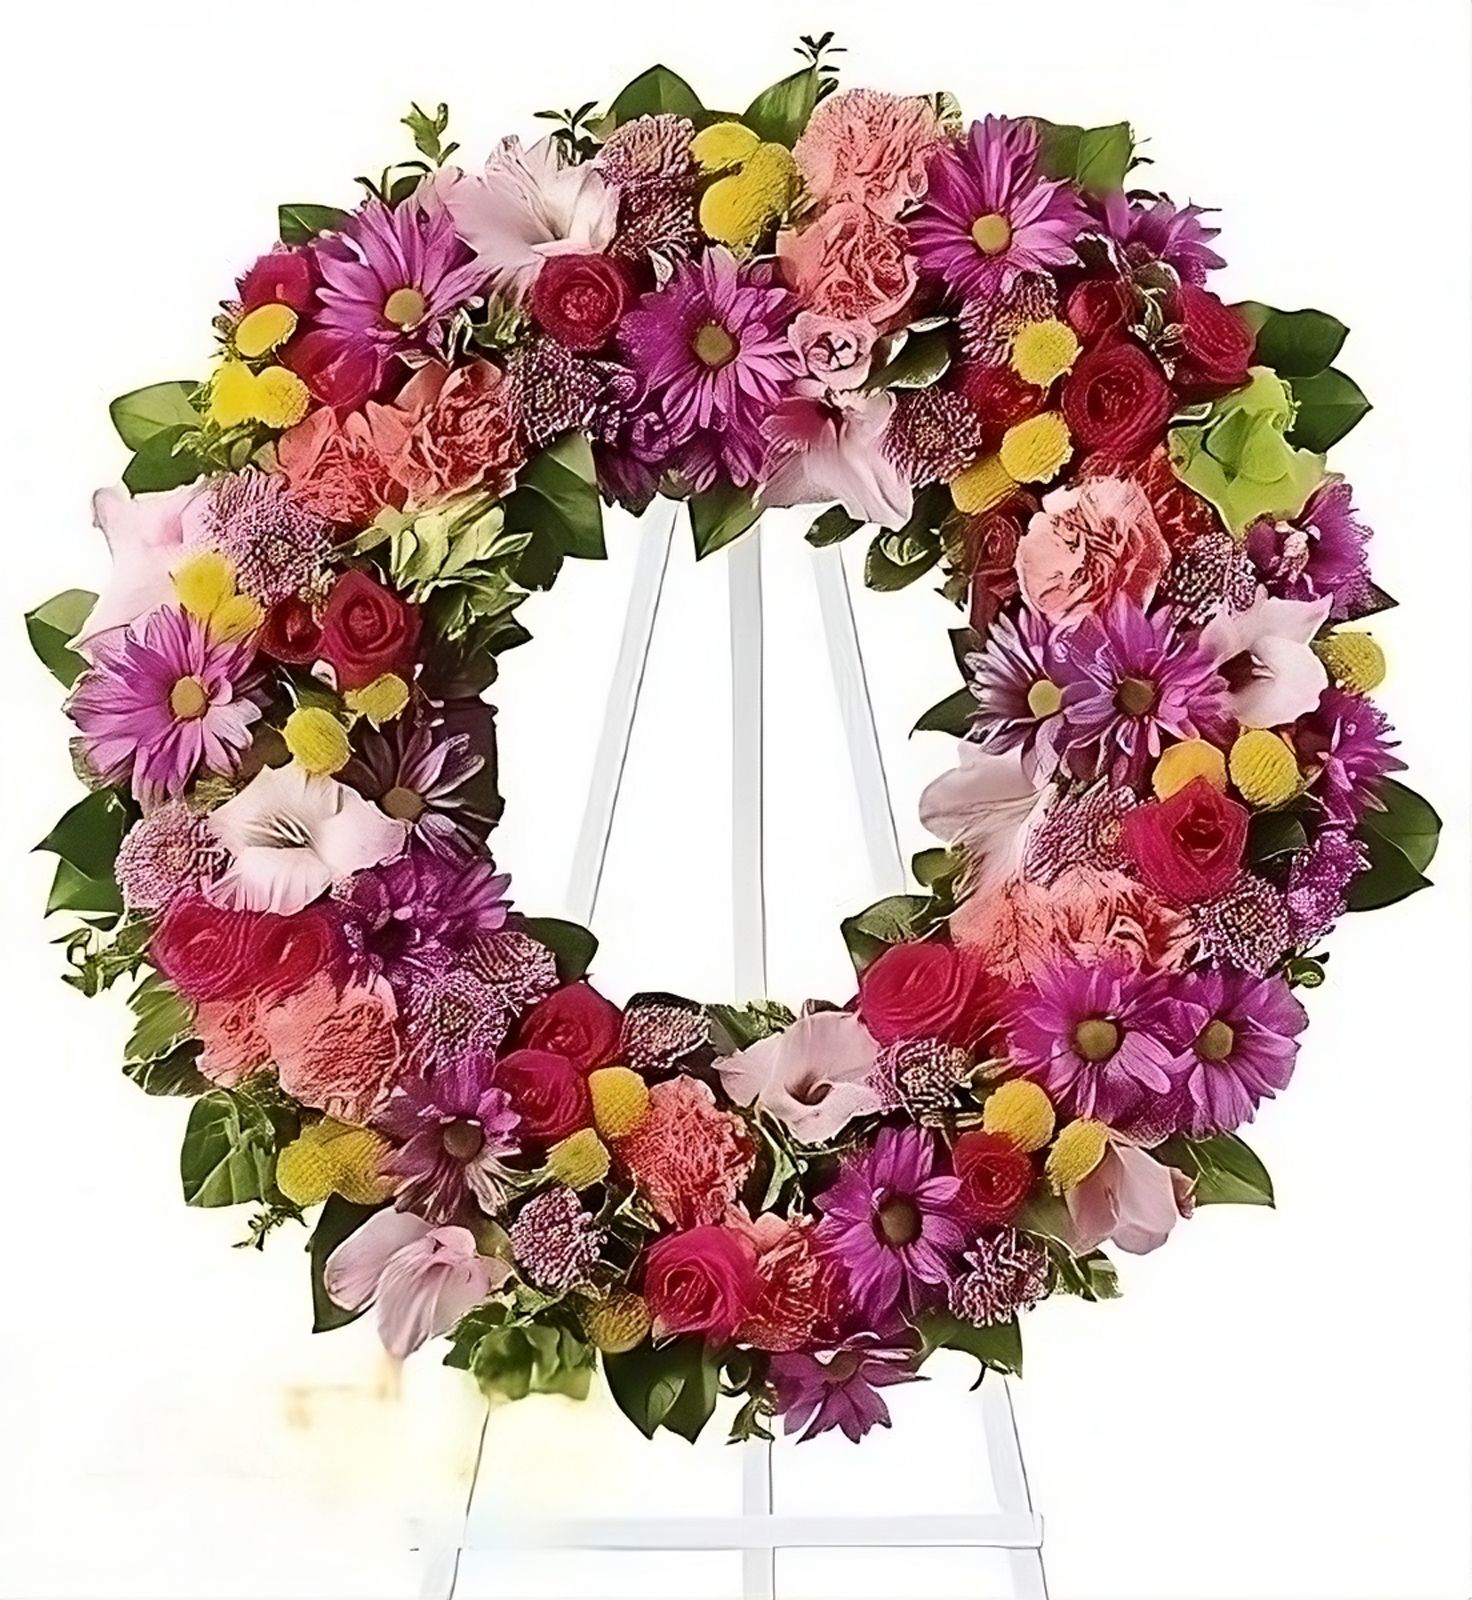 Ритуальная композиция из живых цветов № 10 Бирмингем (США)